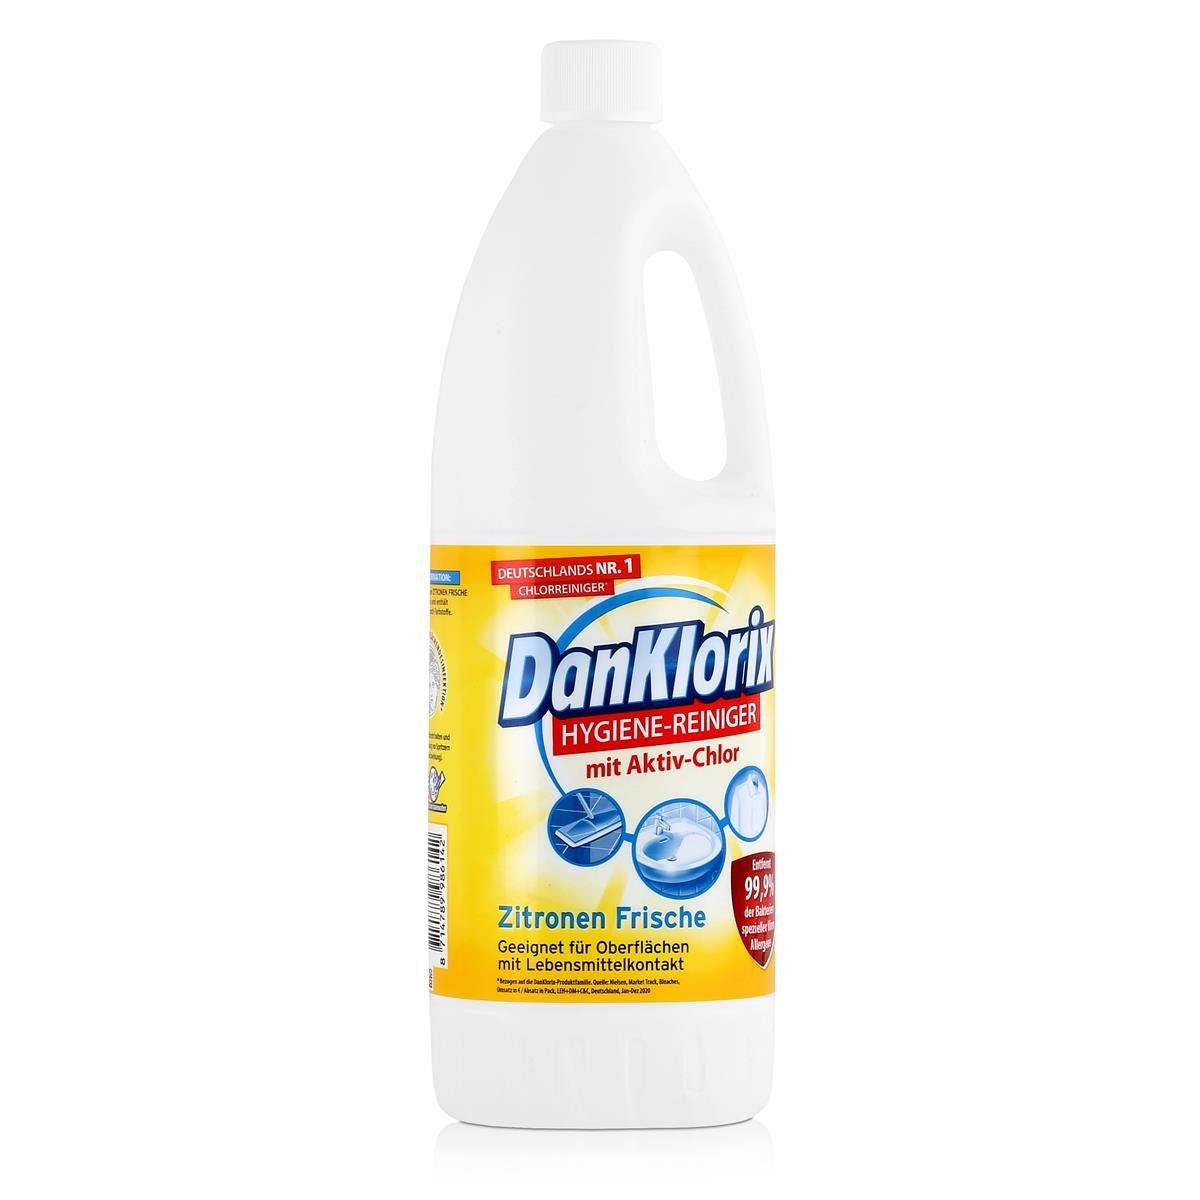 DanKlorix DanKlorix Hygiene-Reiniger Zitronen Frische 1,5L – Mit Aktiv-Chlor (1e WC-Reiniger